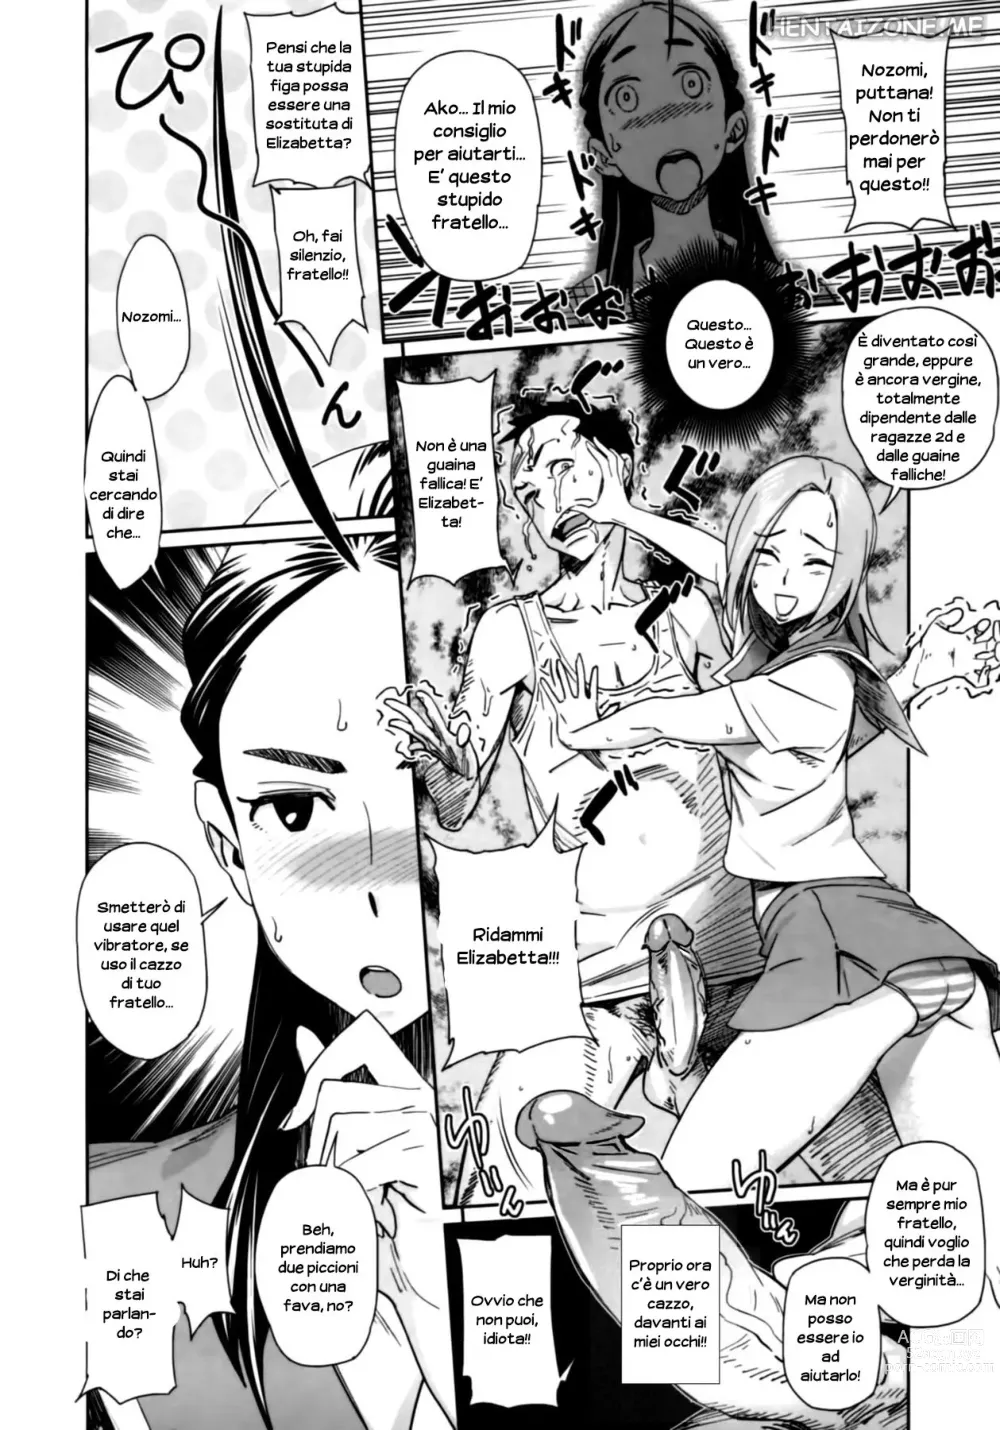 Page 6 of manga La Discussione di Ako e Nozomi sulla Dipendenza da Masturbazione (decensored)